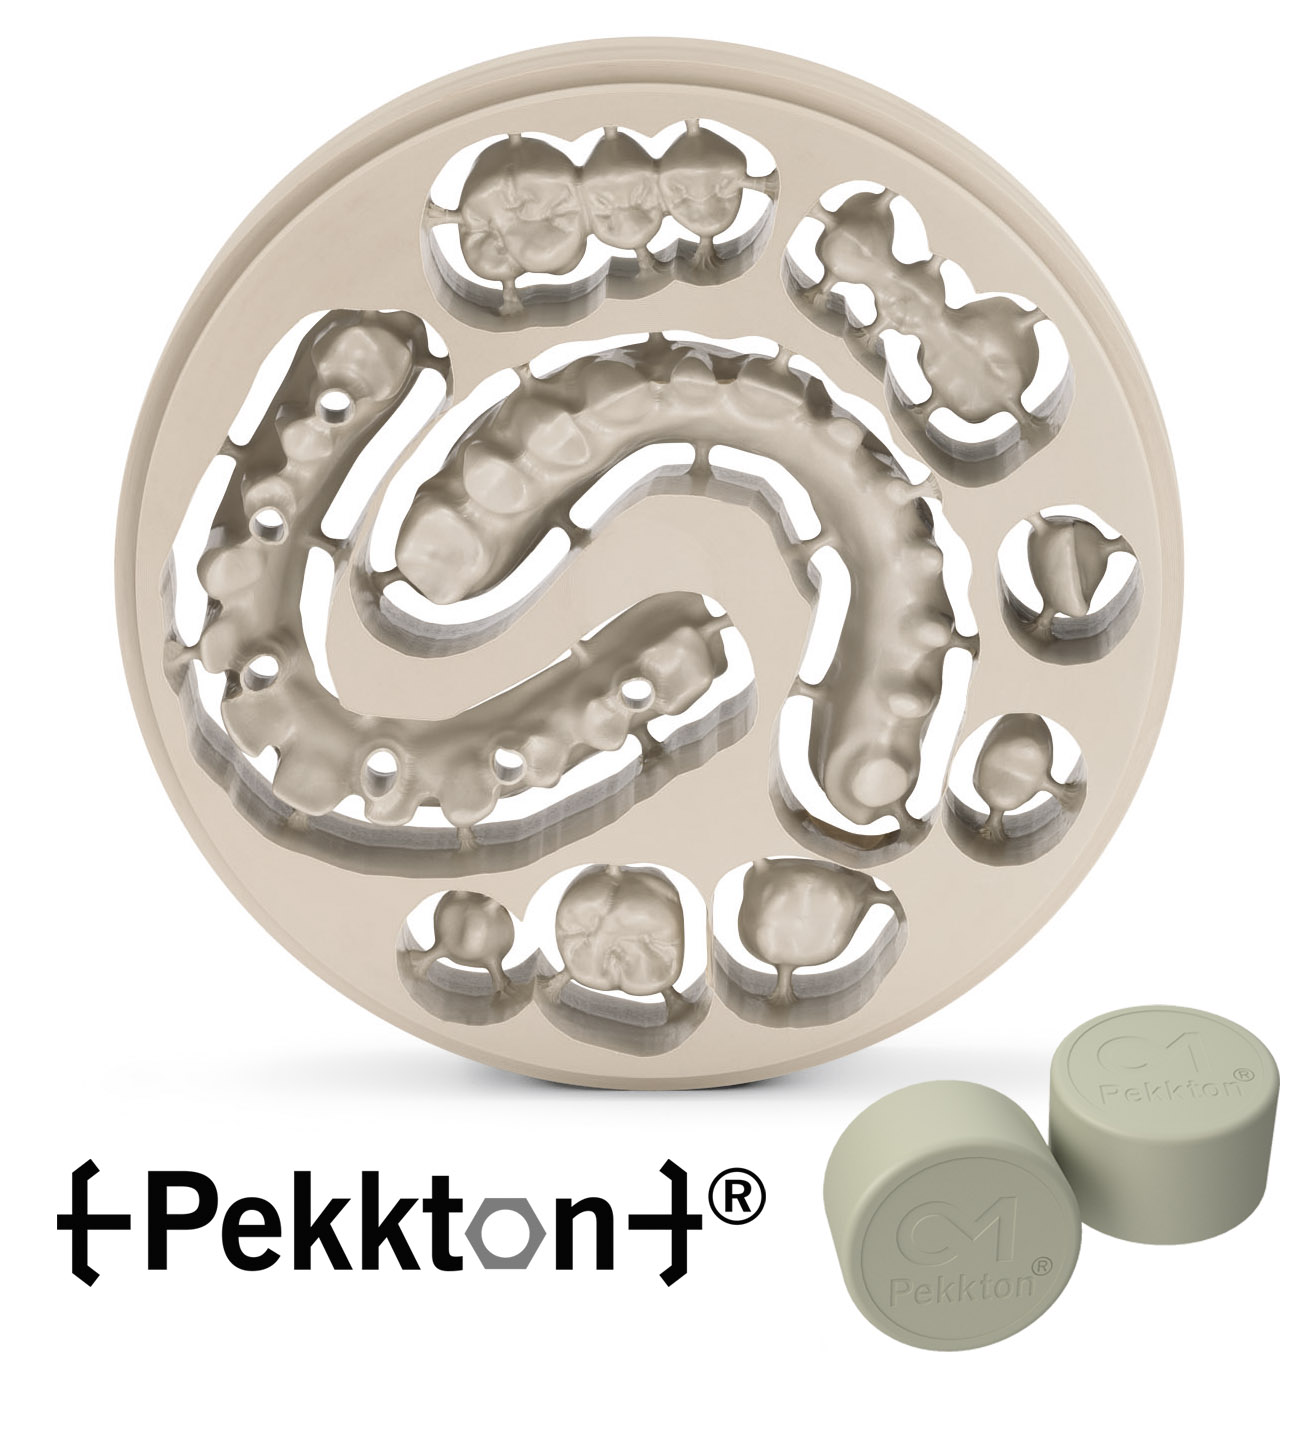 Résultat de recherche d'images pour "pekkton"